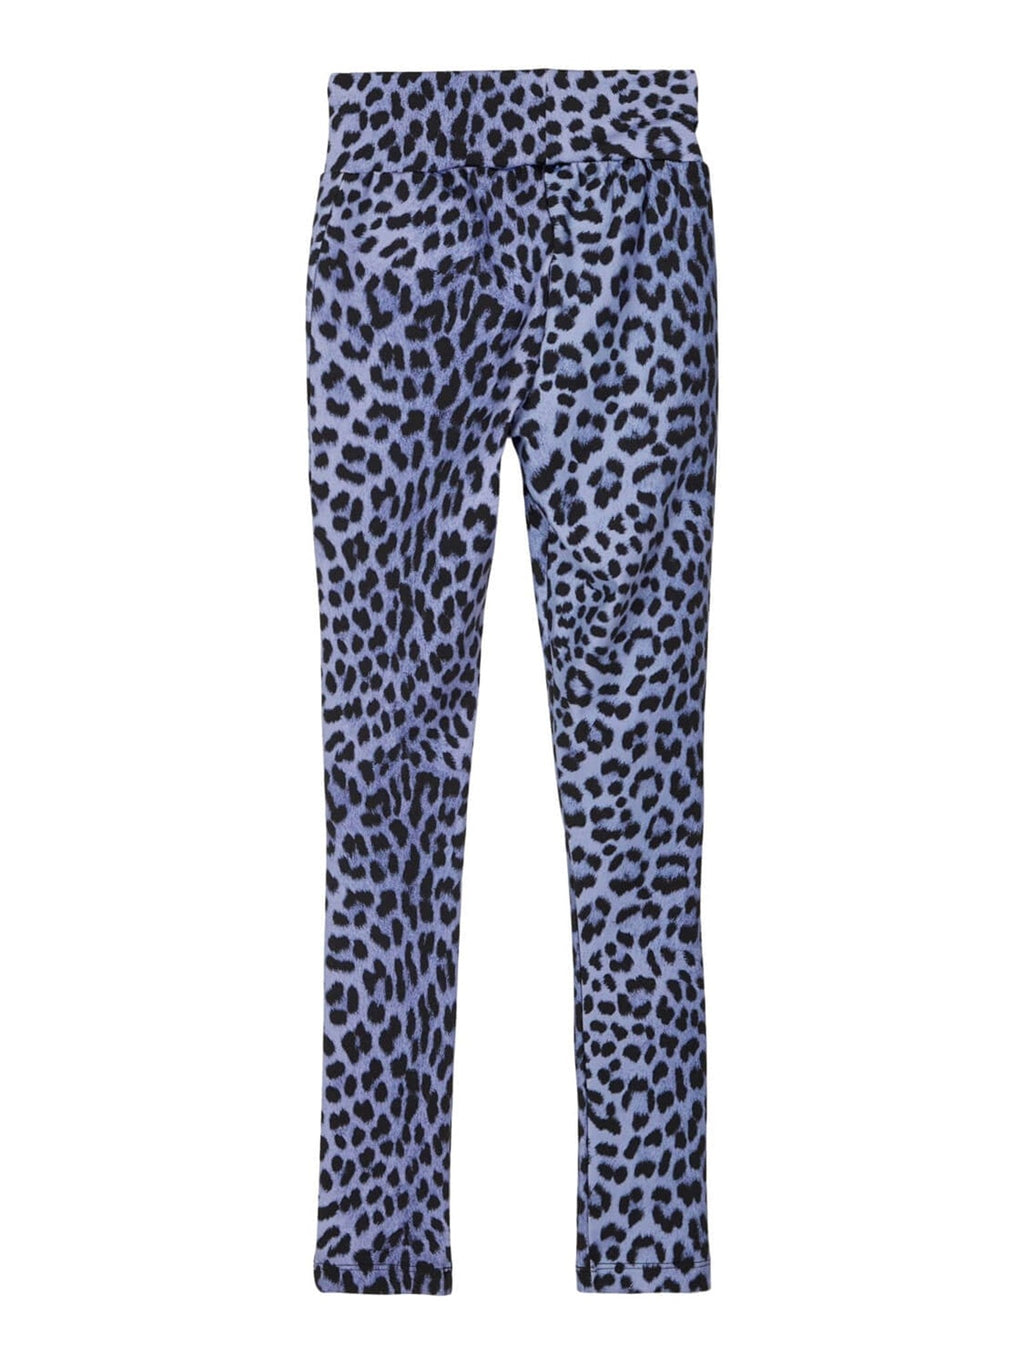 Gemusterte Leggings - Blue Leopard